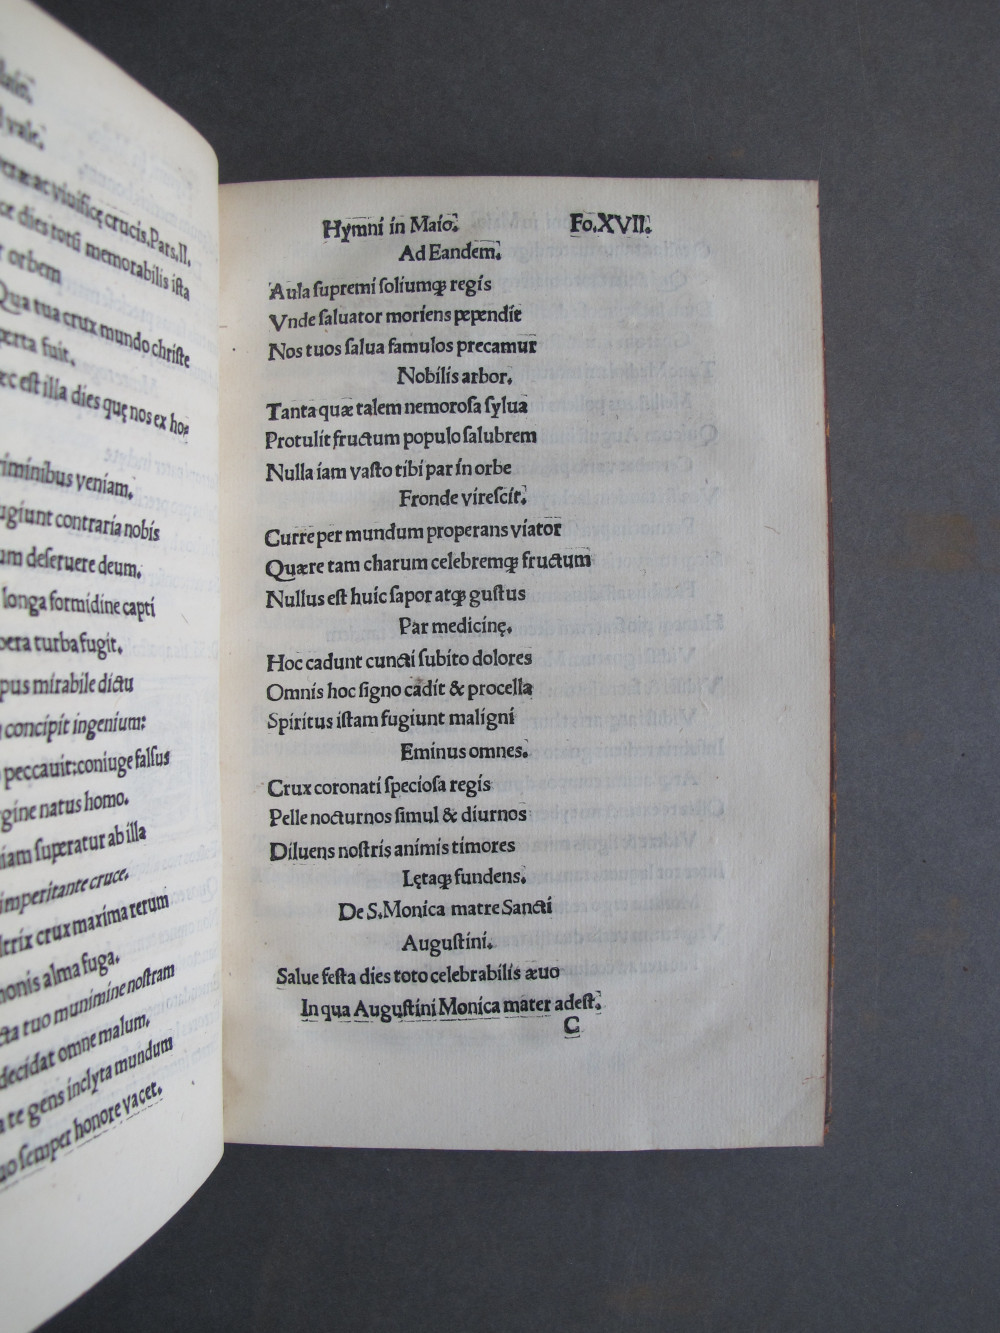 Folio 17 recto